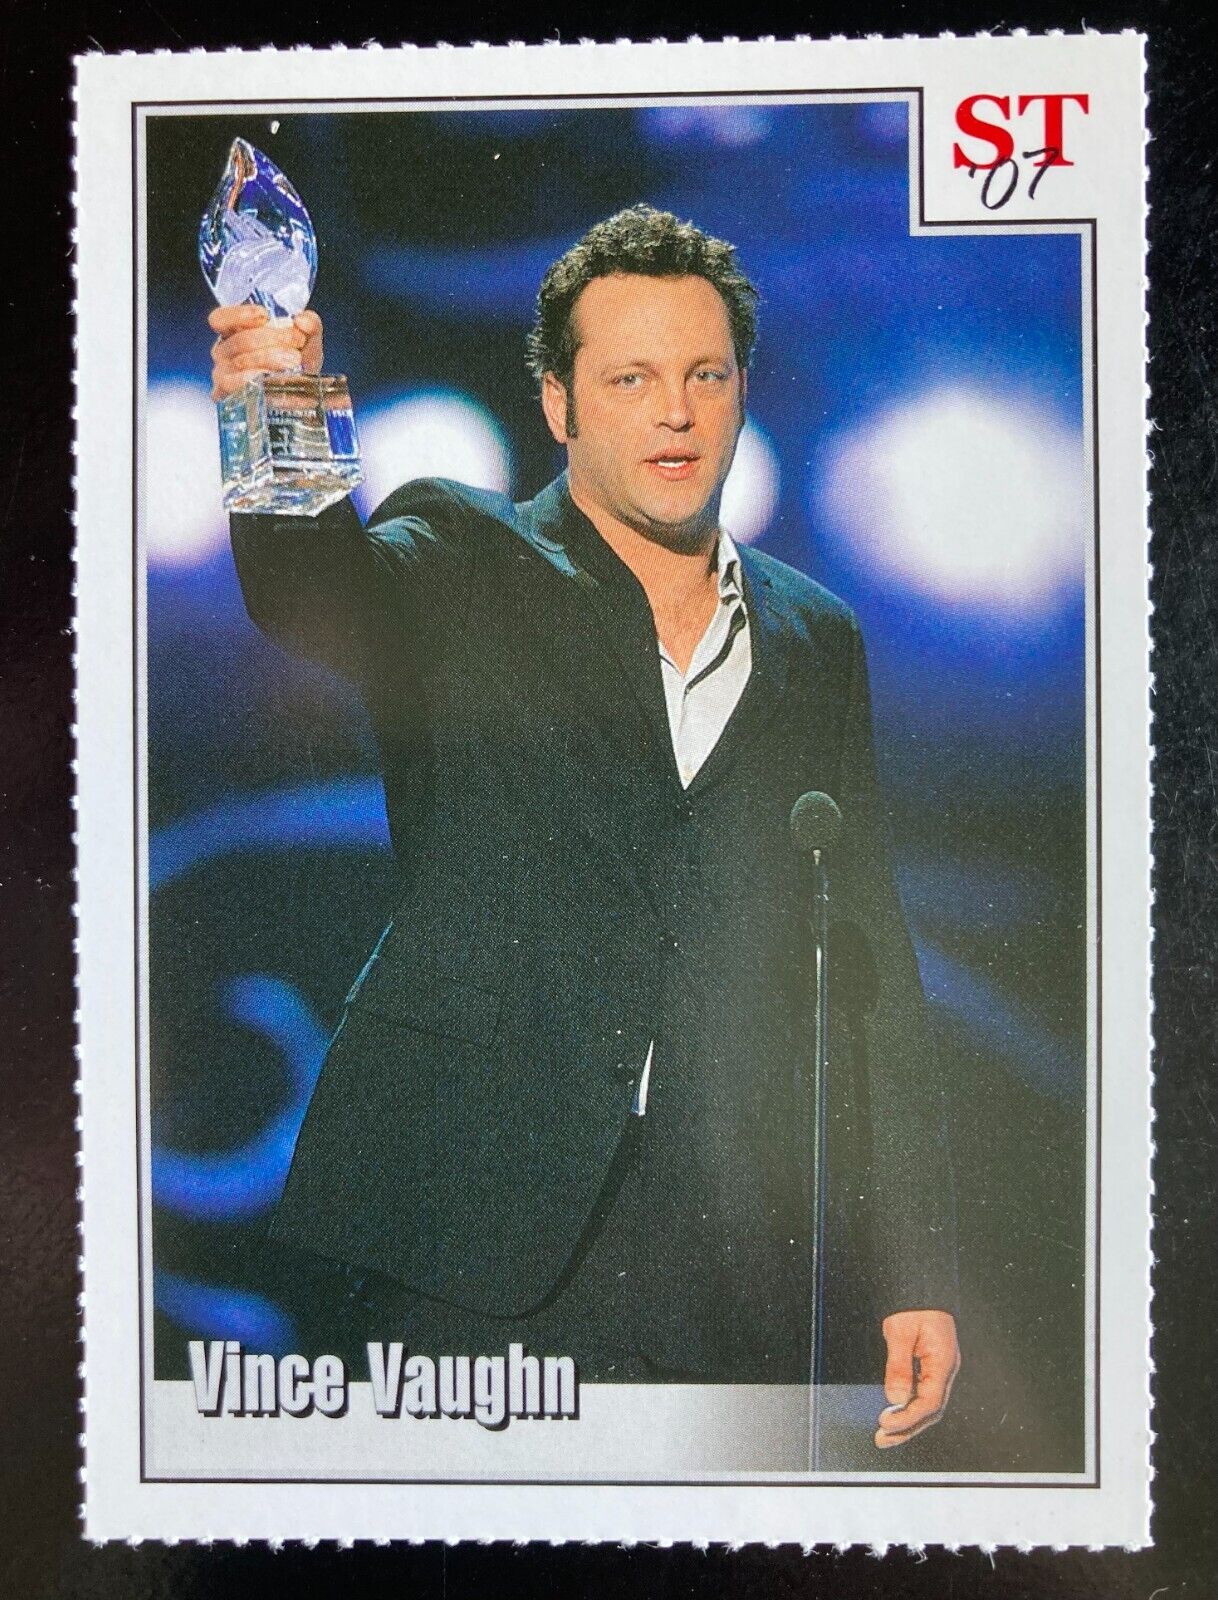 Vince Vaughn trading card-2007 Spotlight Tribute 4-Star Trivia #54